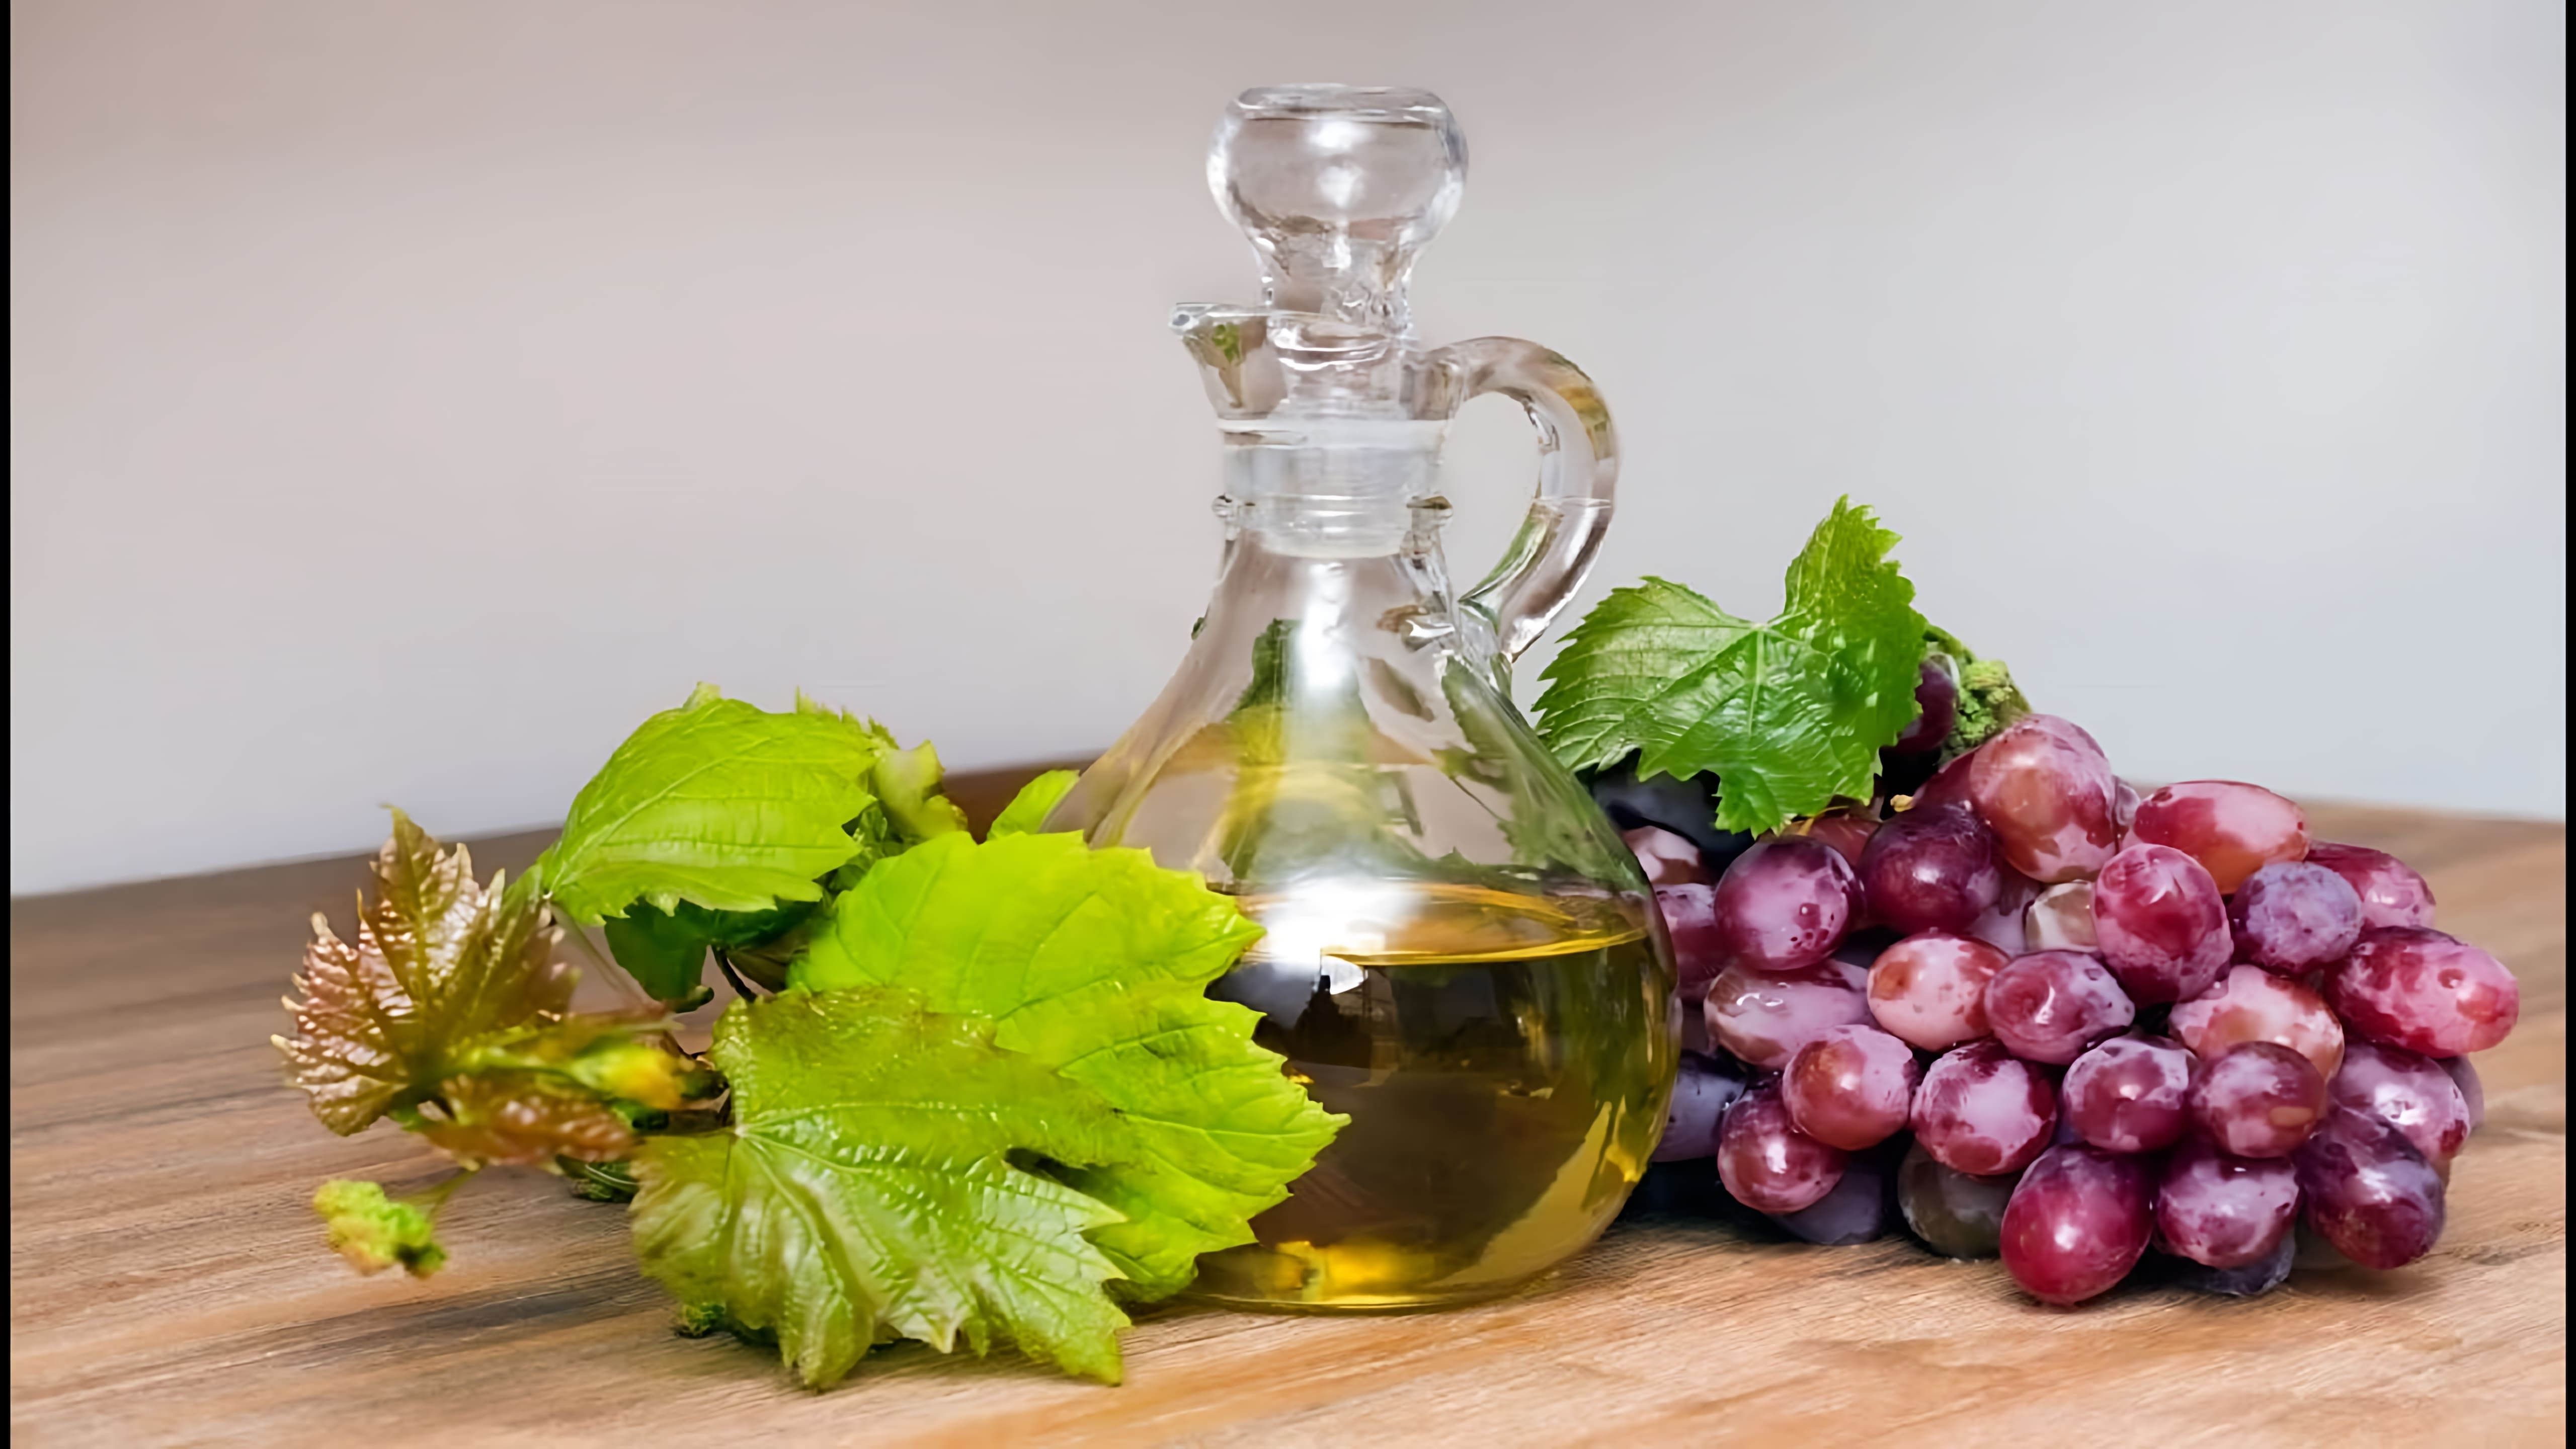 В данном видео демонстрируется процесс приготовления масла из косточек винограда в домашних условиях